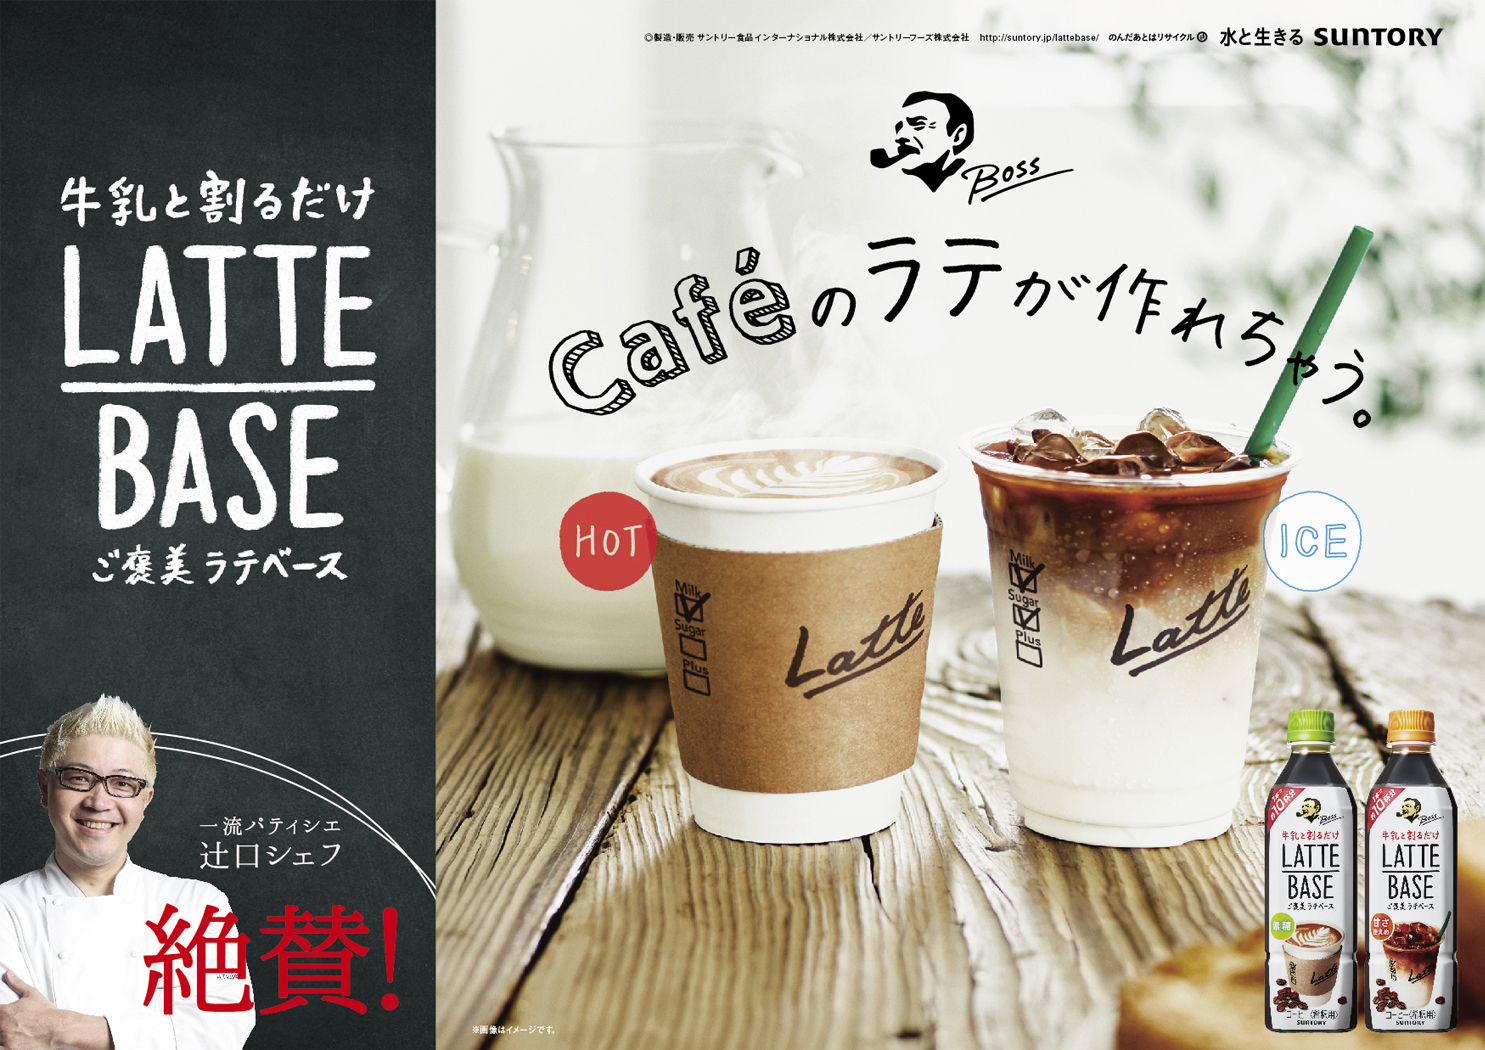 Suntory boss LatteBase Valentine B3board